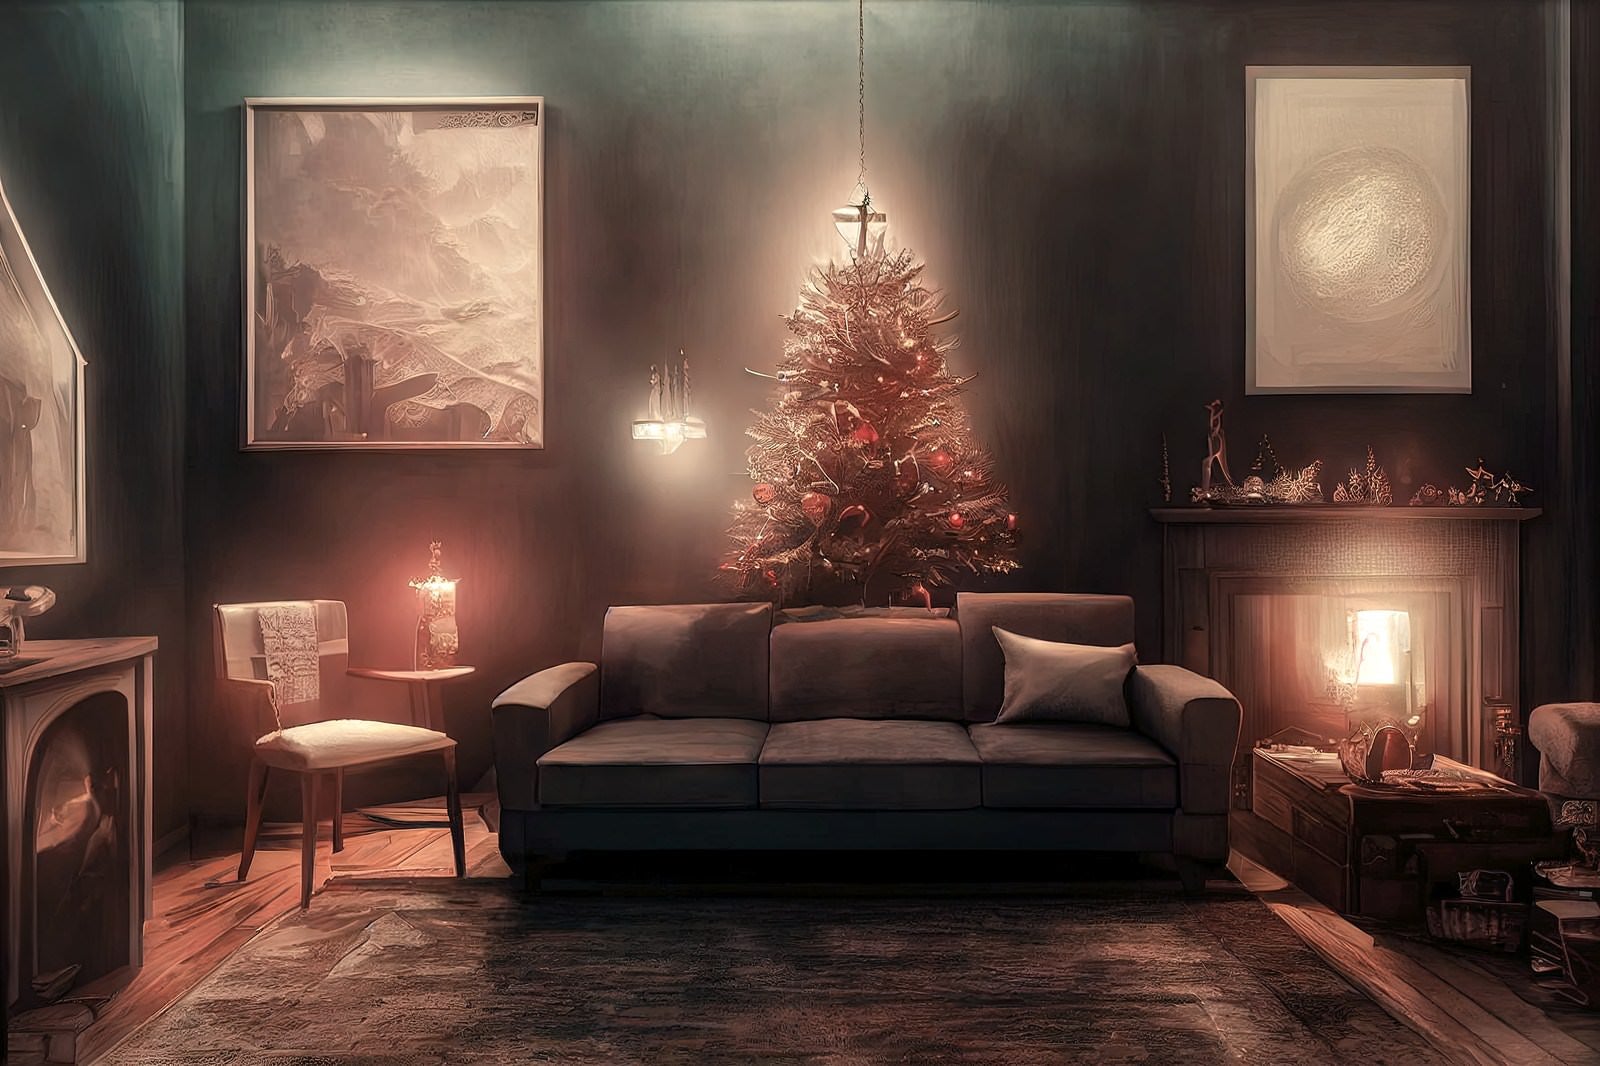 「クリスマスツリーの前のソファー」の写真